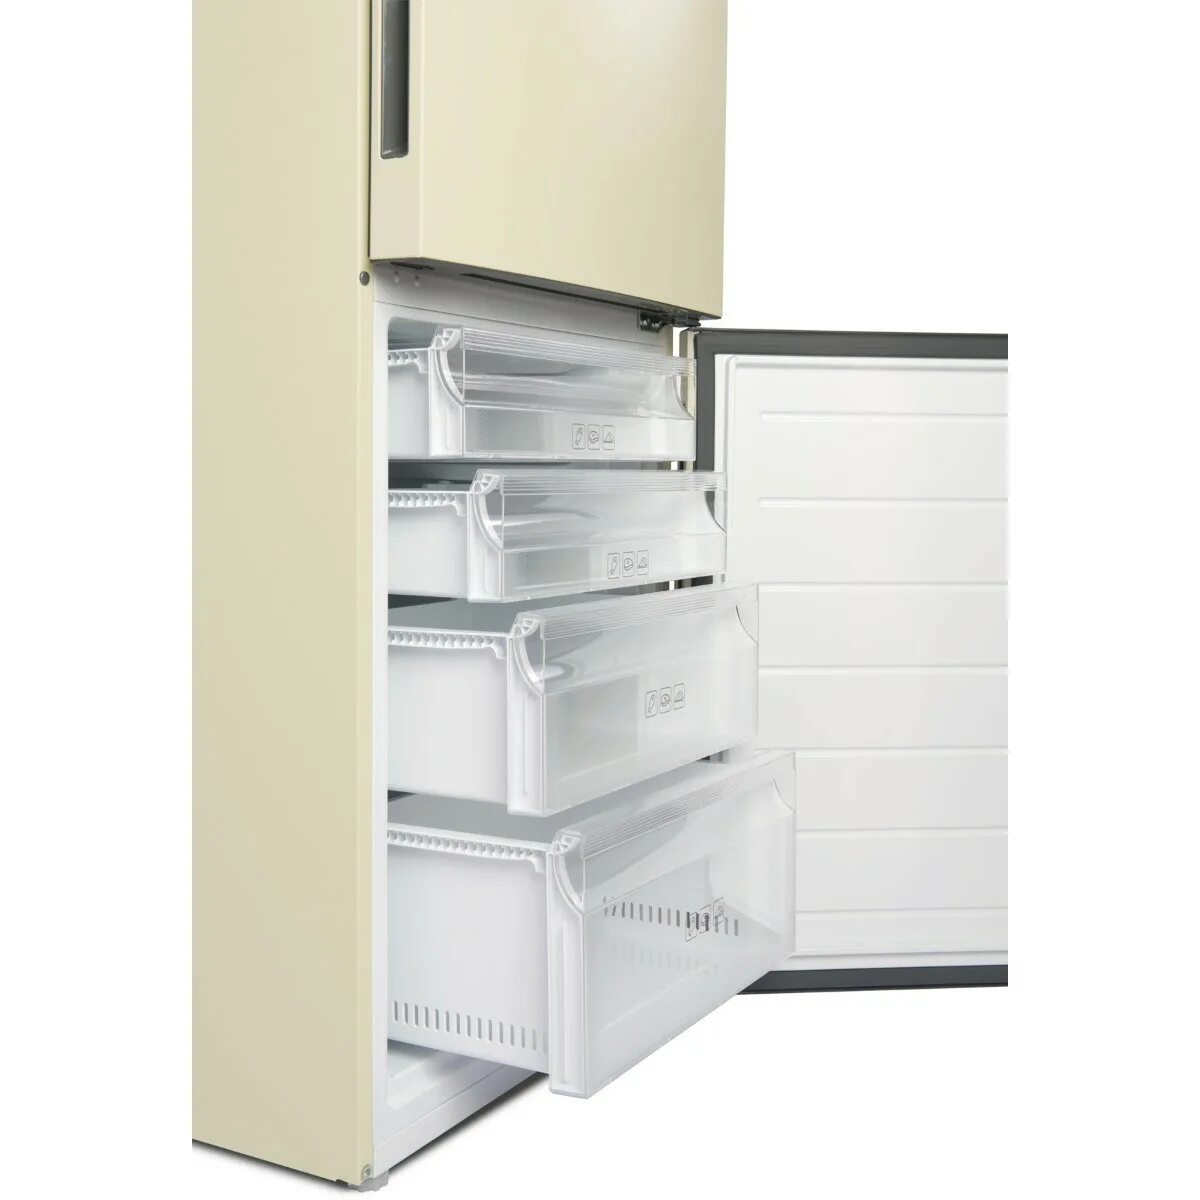 Холодильник Haier c2f637ccg. Холодильник Хайер 637 CCG. Холодильник Haier c2f637ccg бежевый. Холодильник Haier c2f637cgwg белый.